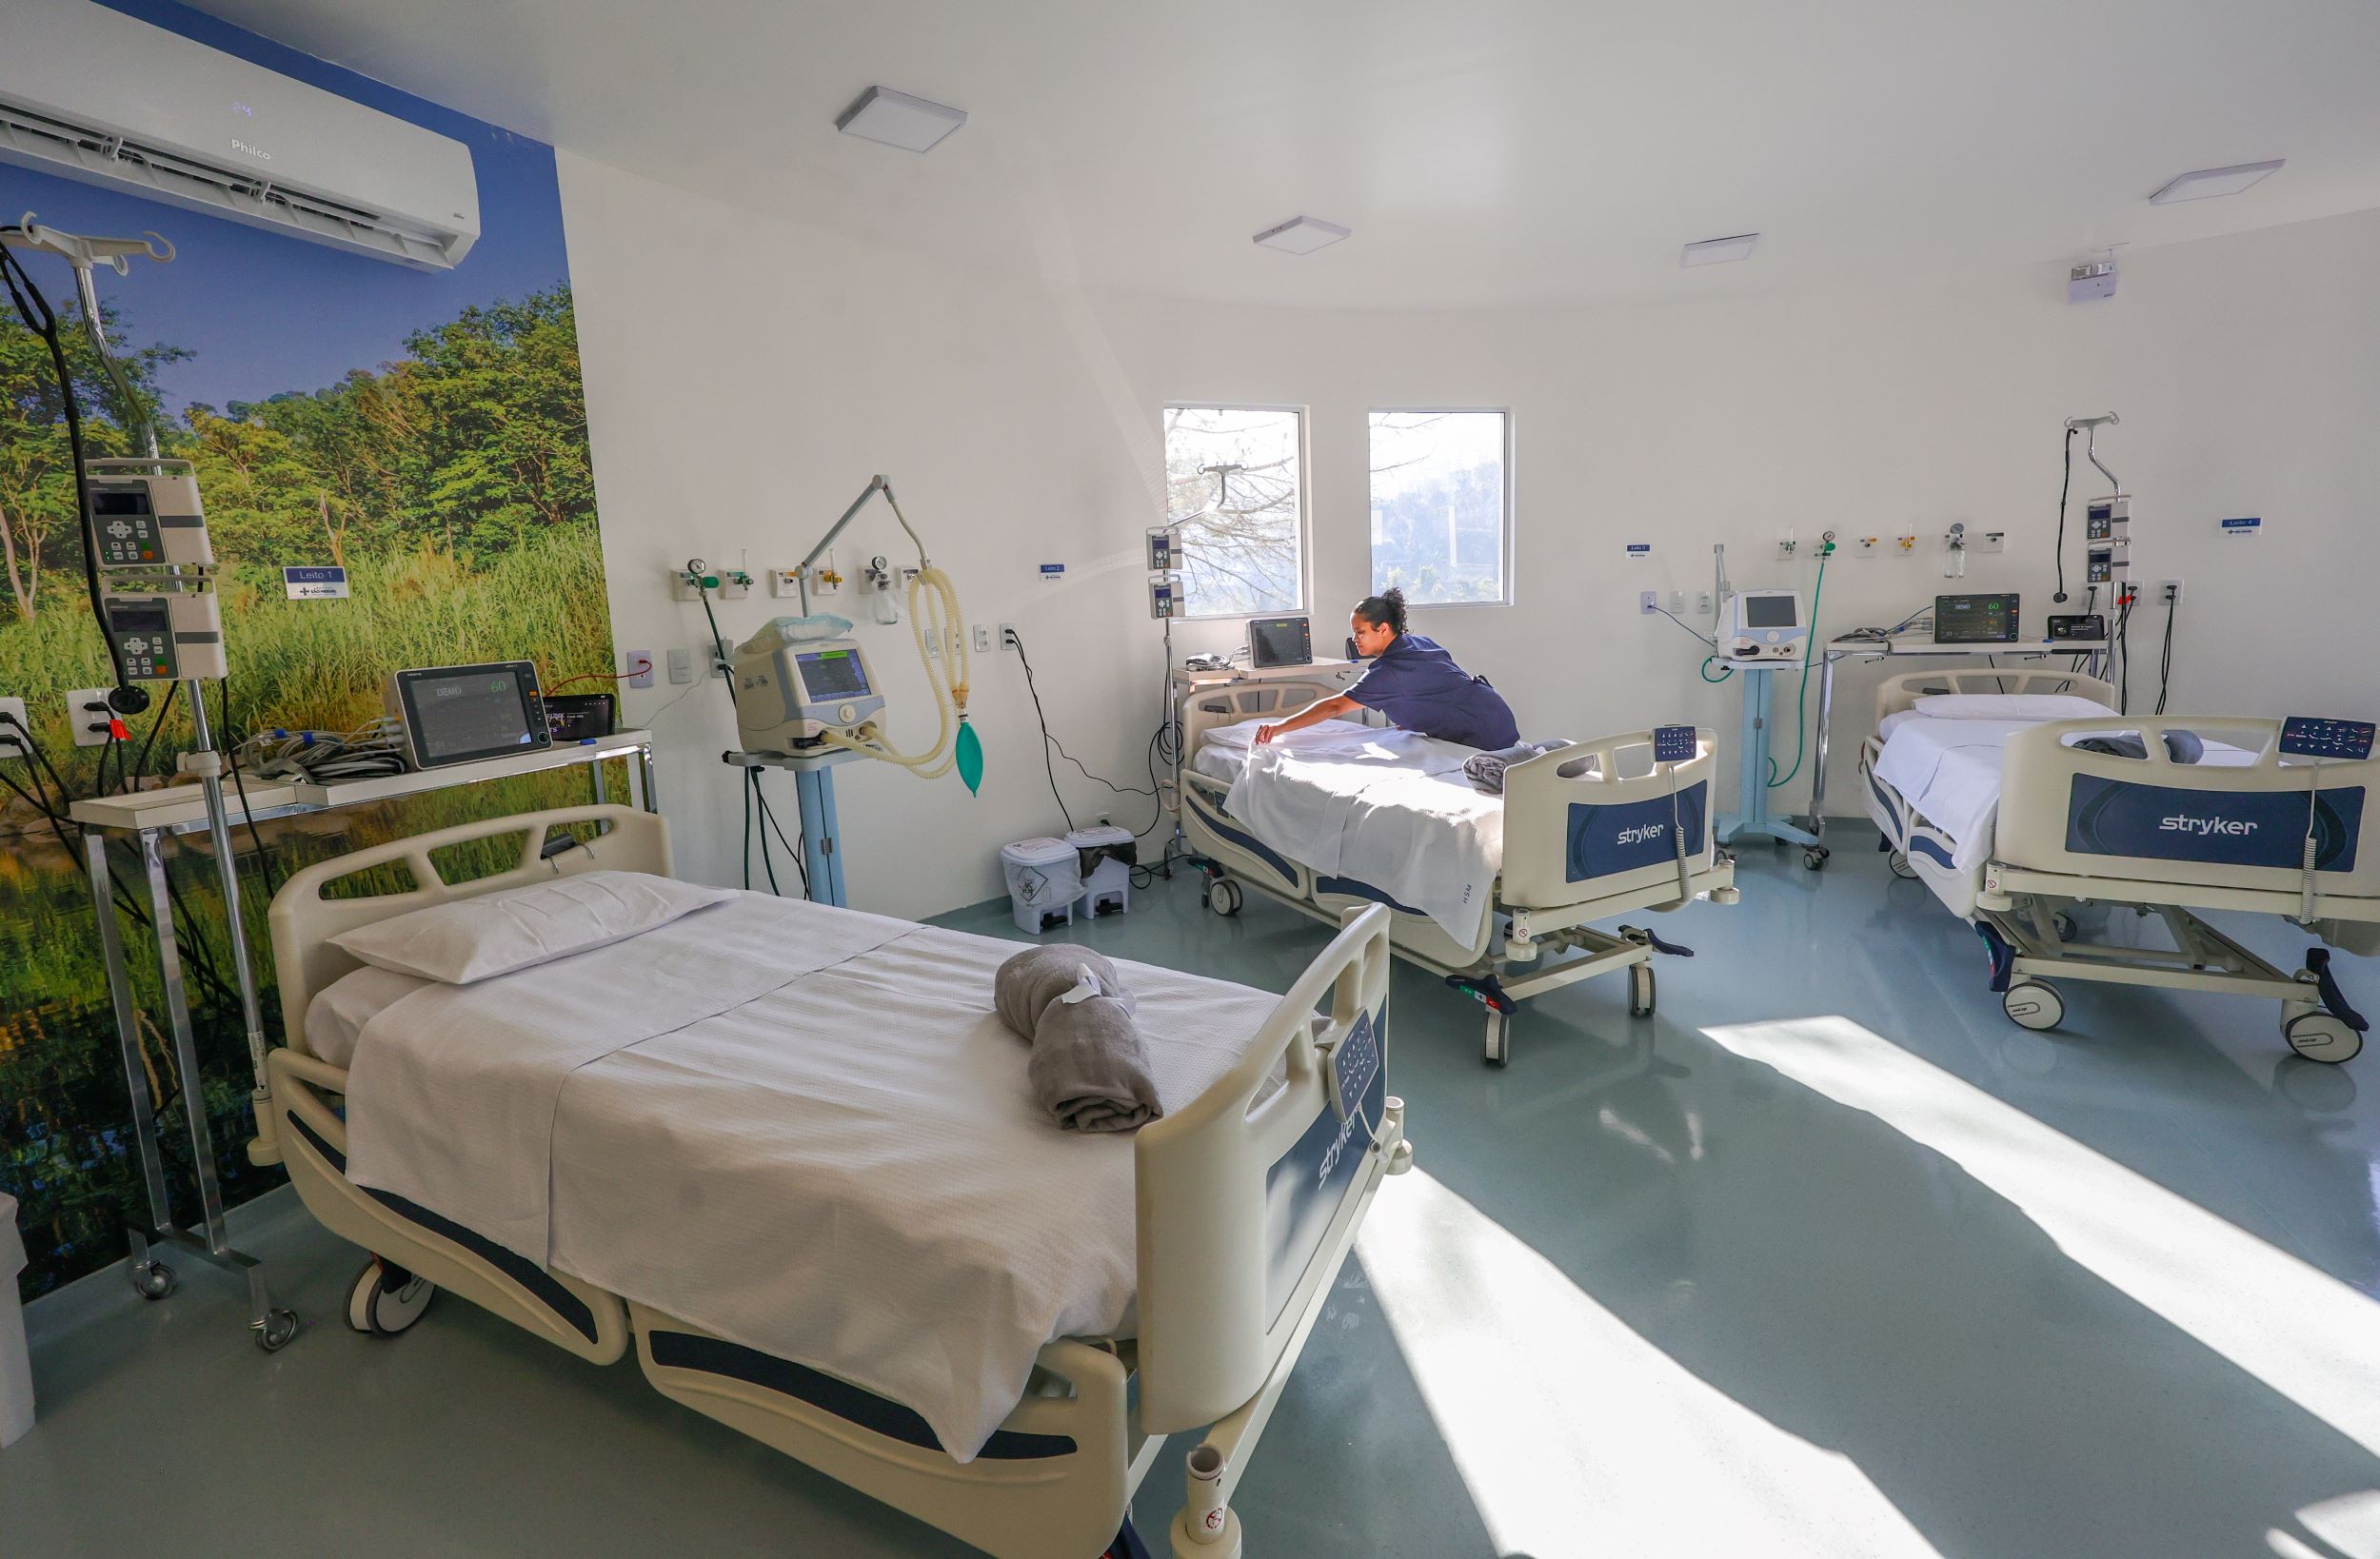 Estado abre 20 leitos de UTI e habilita cirurgias eletivas no Hospital e Maternidade de São Miguel em Joaçaba